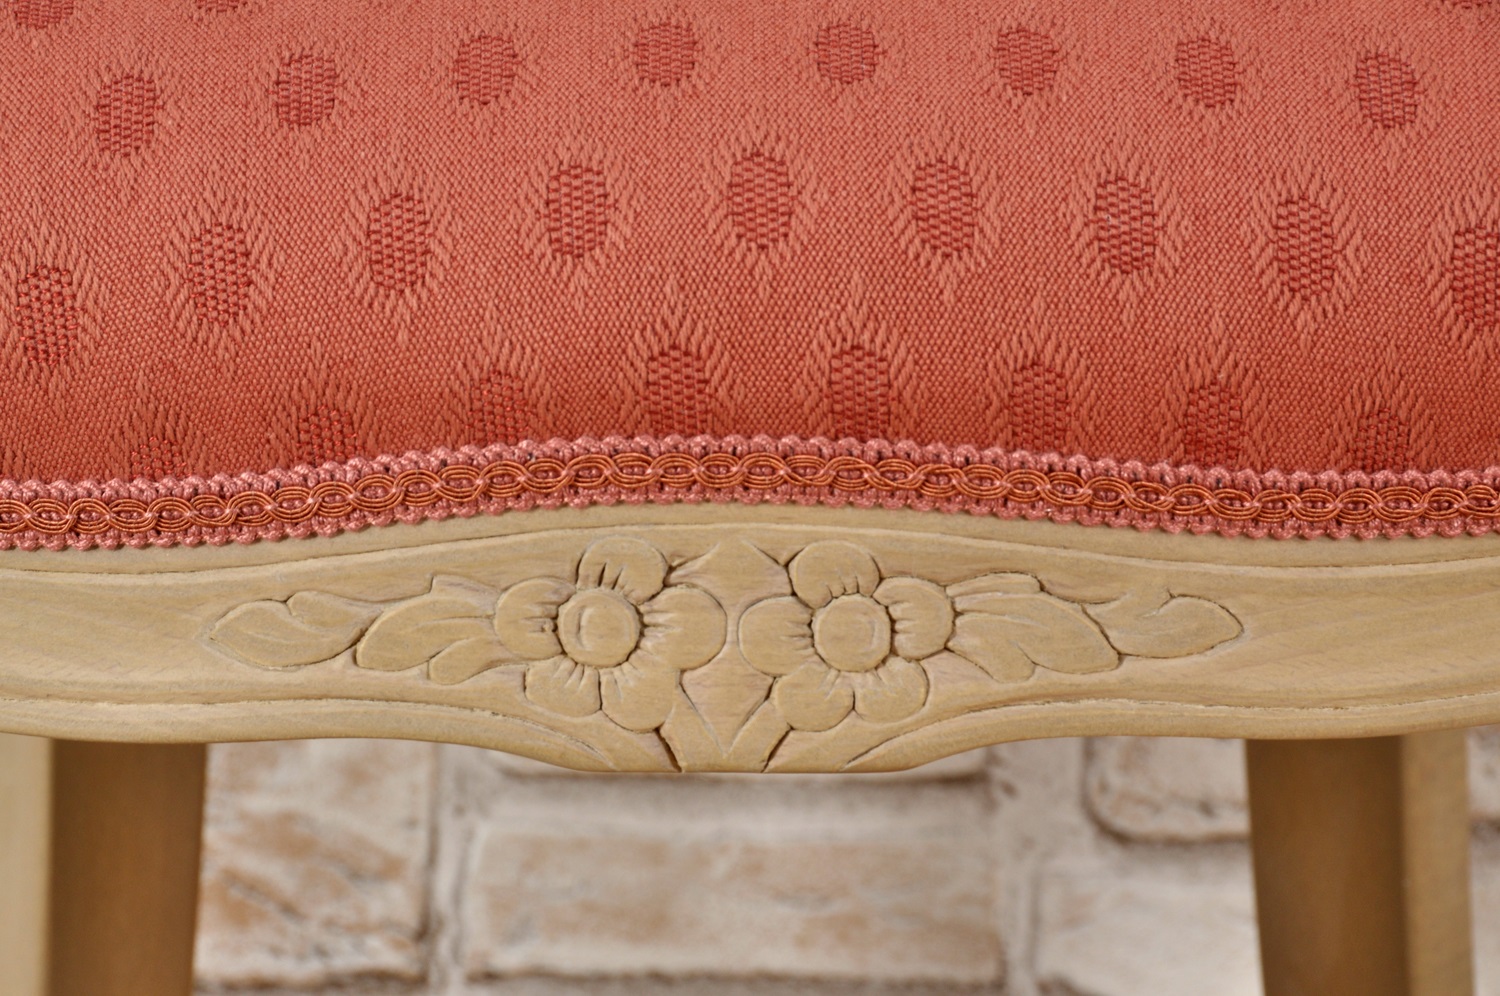 sedia di lusso esclusiva in stile classico Luigi Filippo scolpita a mano lucidata sbiancata nocciola naturale su legno di faggio massiccio